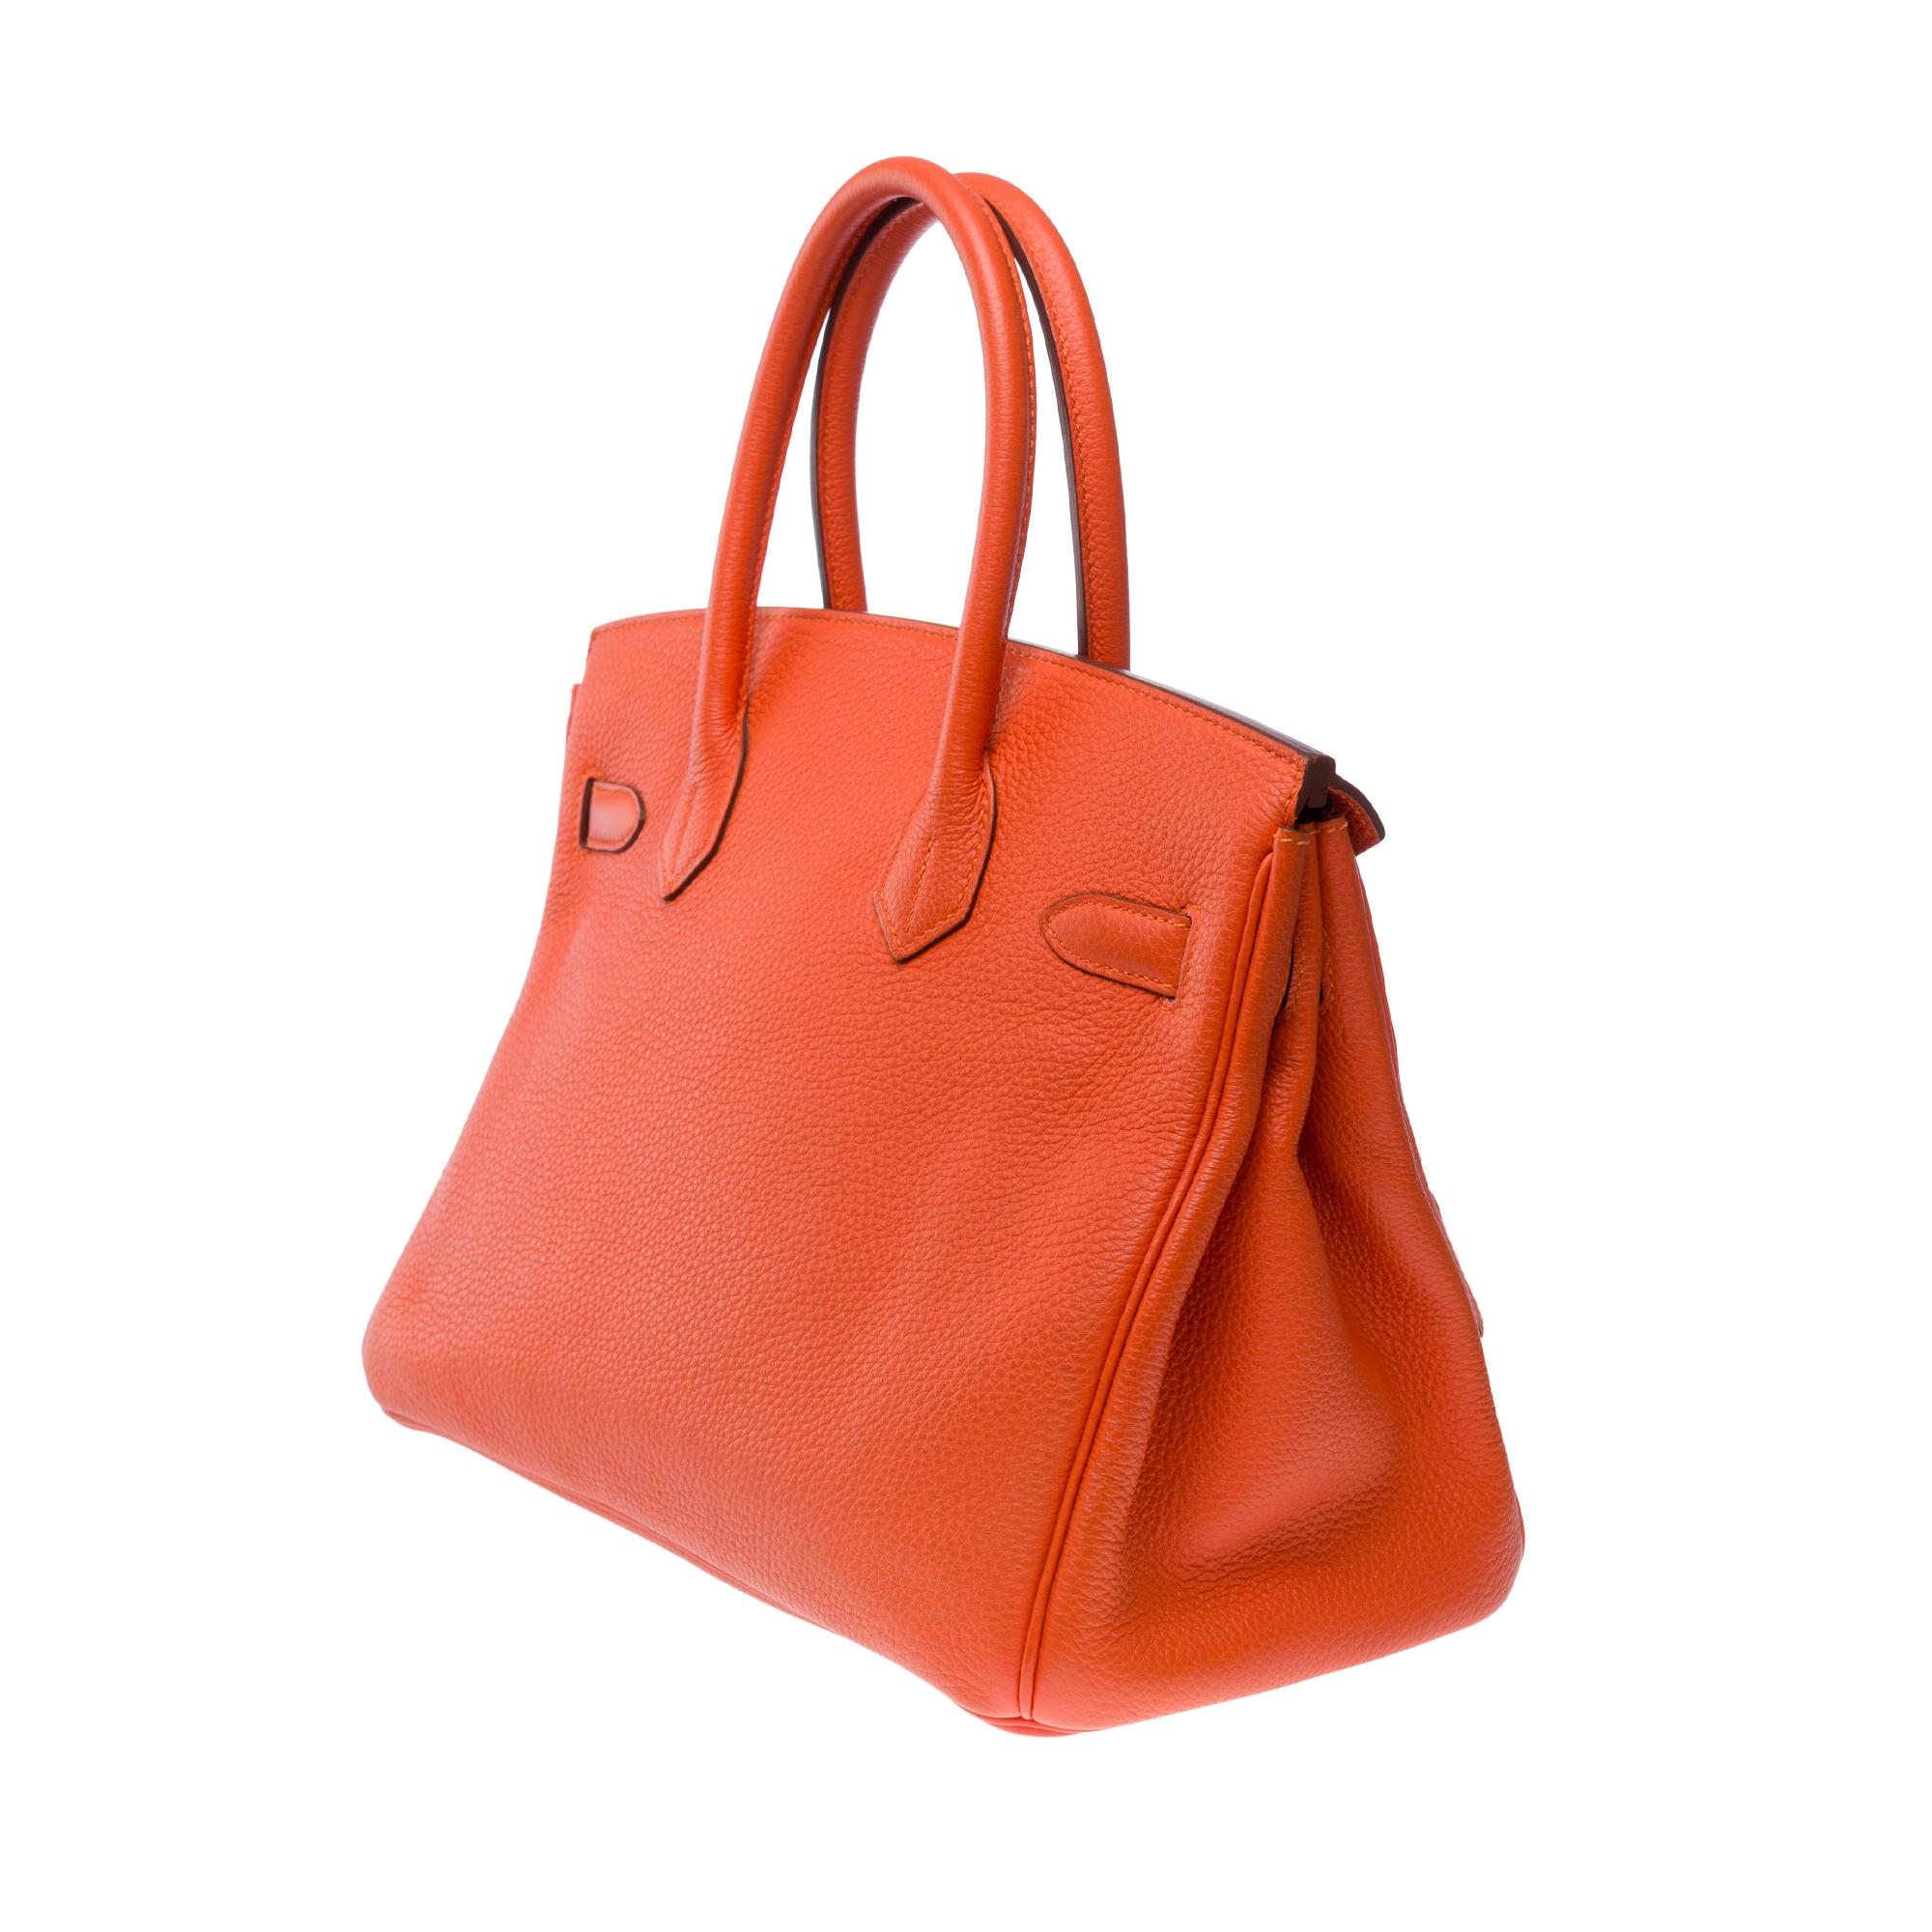 Women's Superb Hermes Birkin 30 handbag in Taurillon Clemence Orange Poppy leather, GHW For Sale